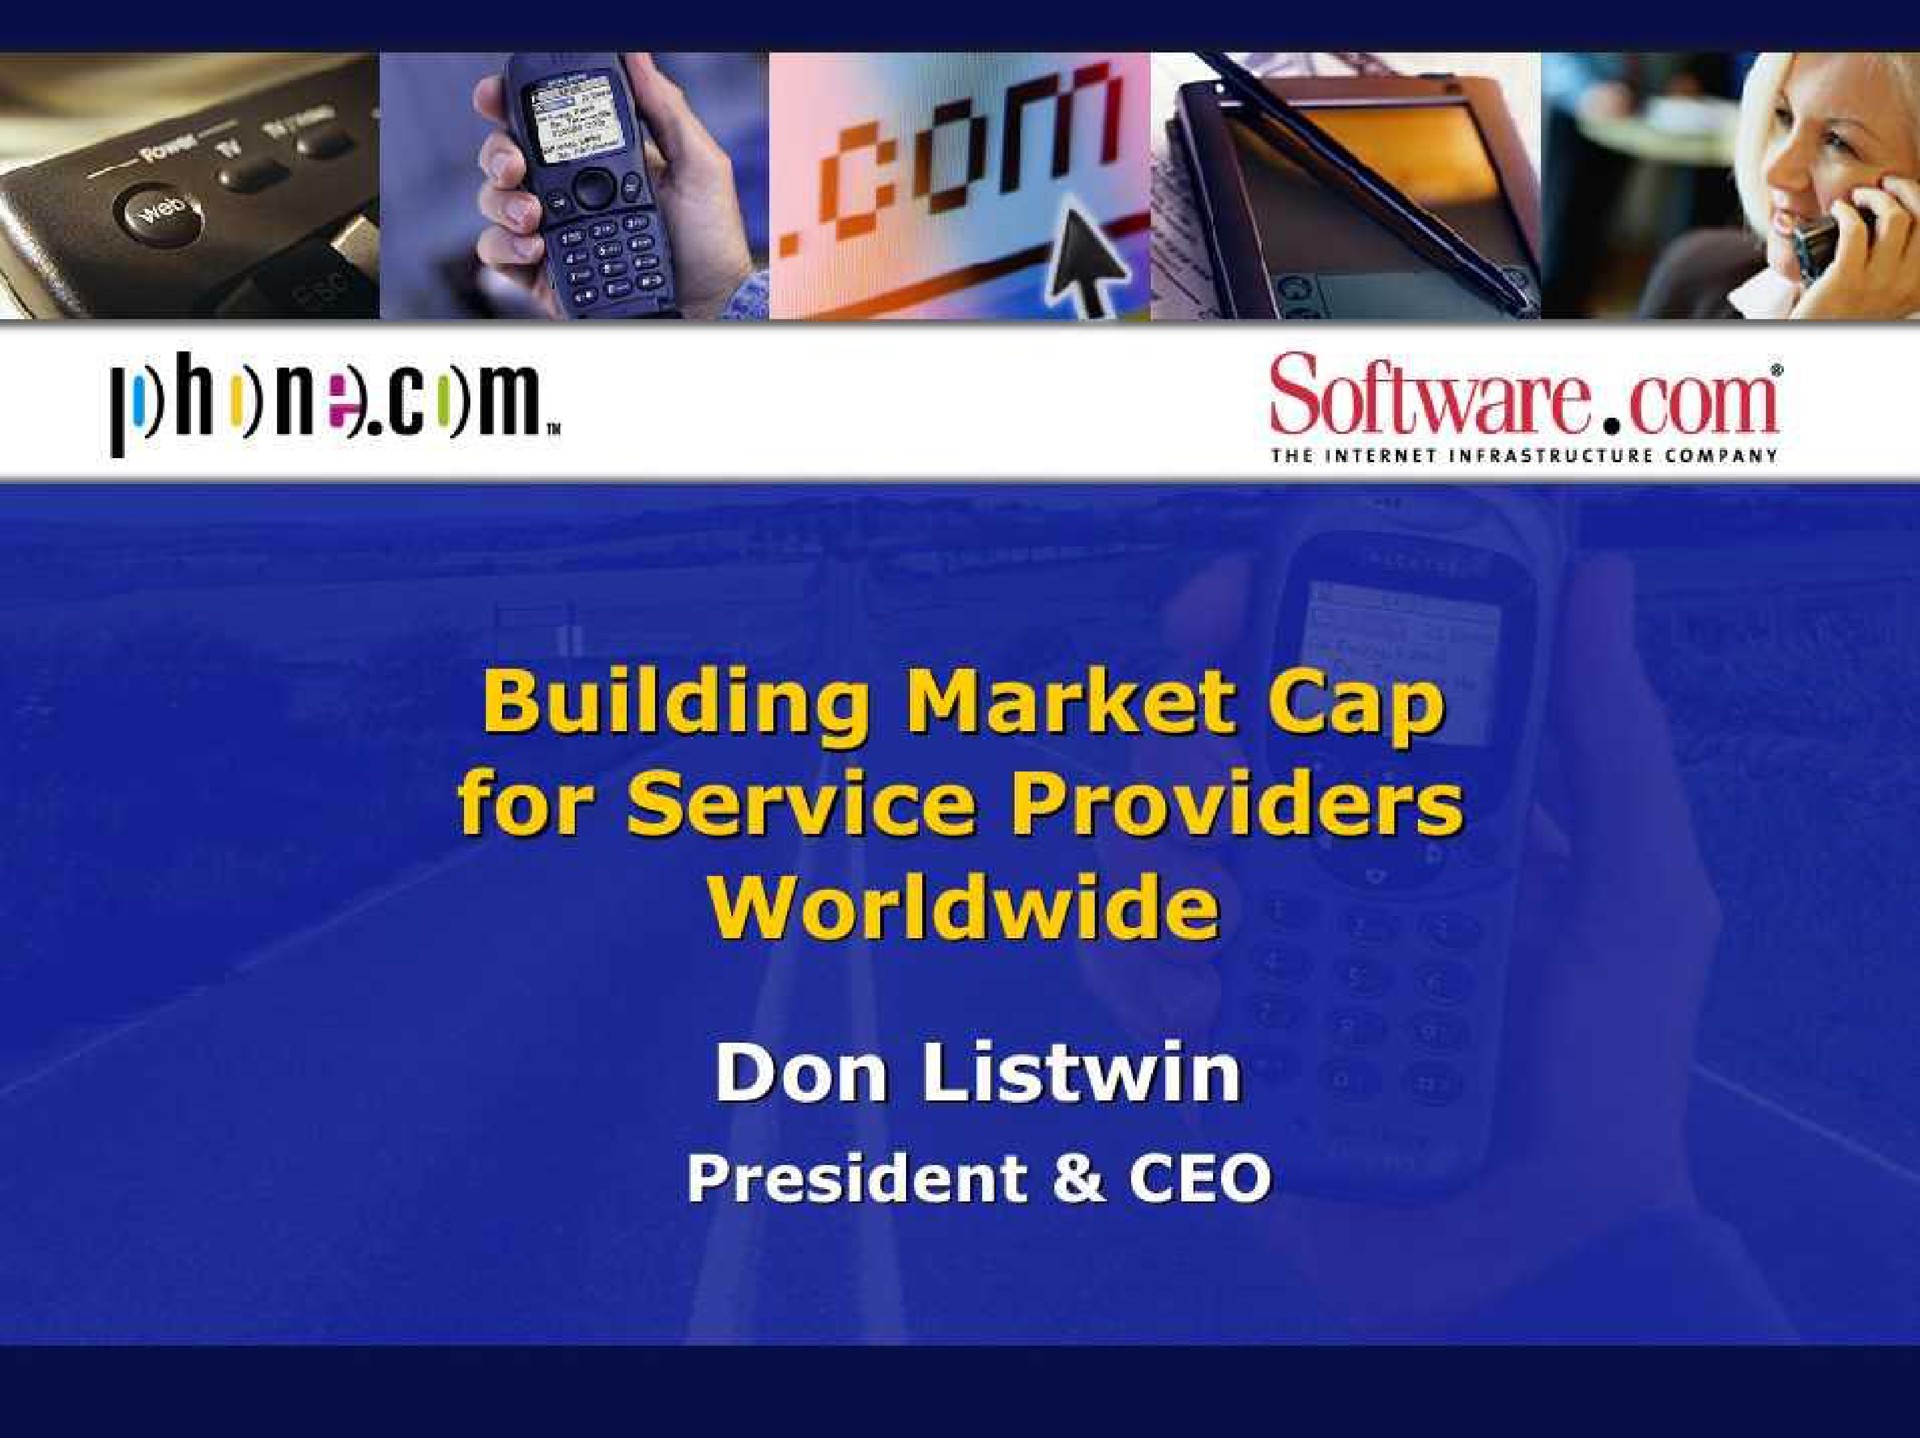 building market cap | Phone.com